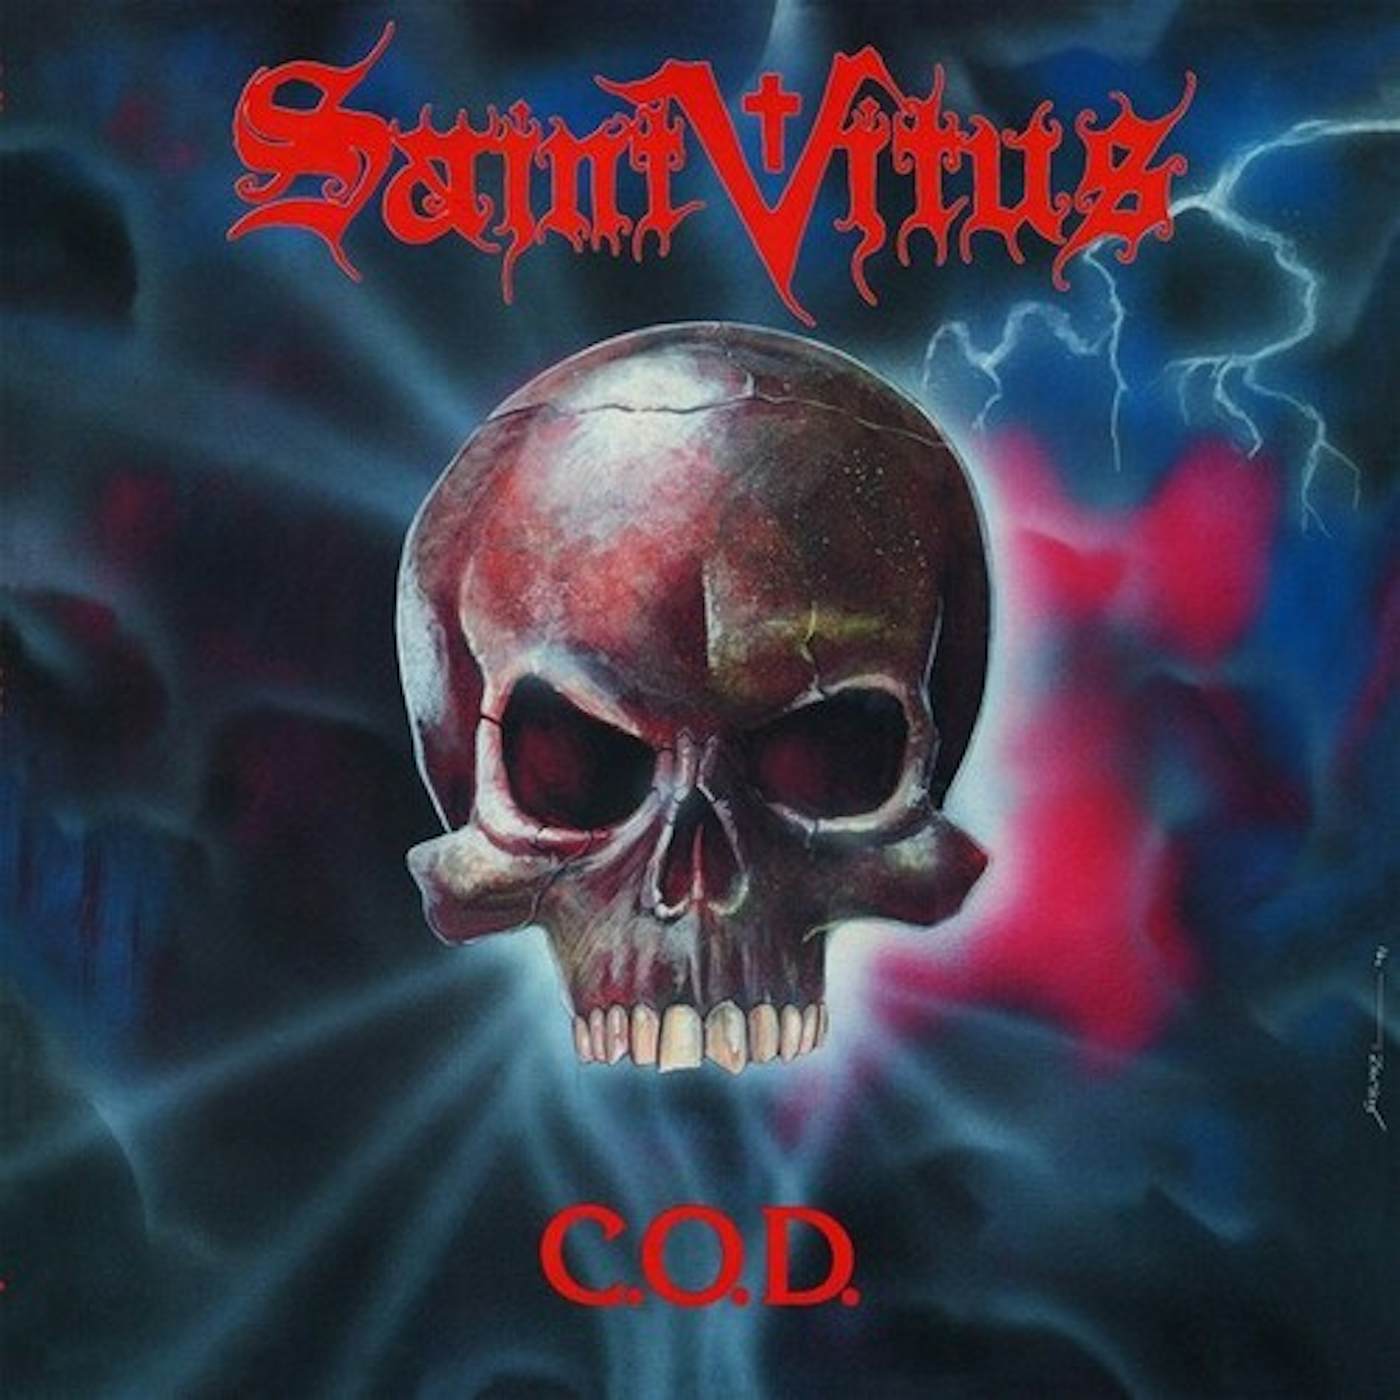 Saint Vitus COD Vinyl Record